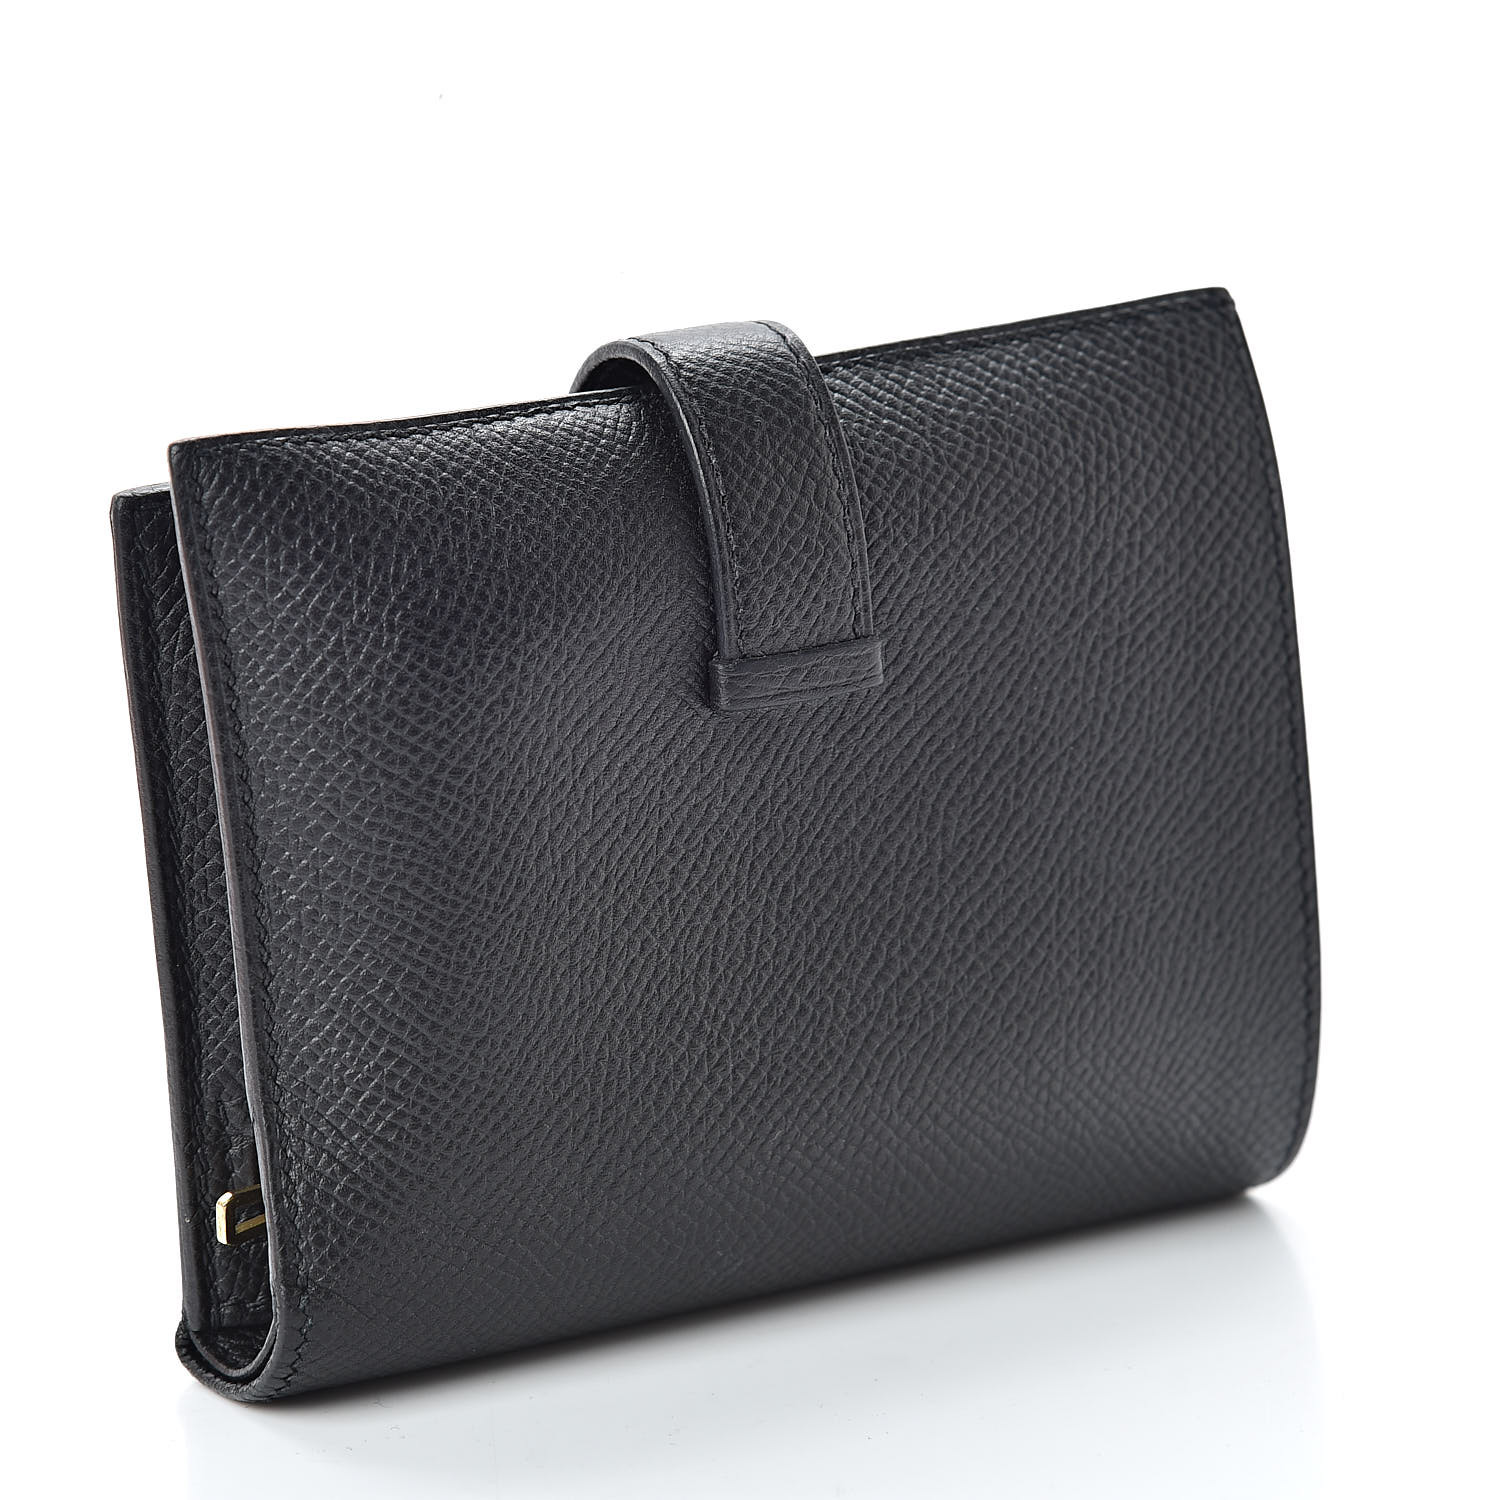 HERMES Epsom Bearn Compact Wallet Black 504007